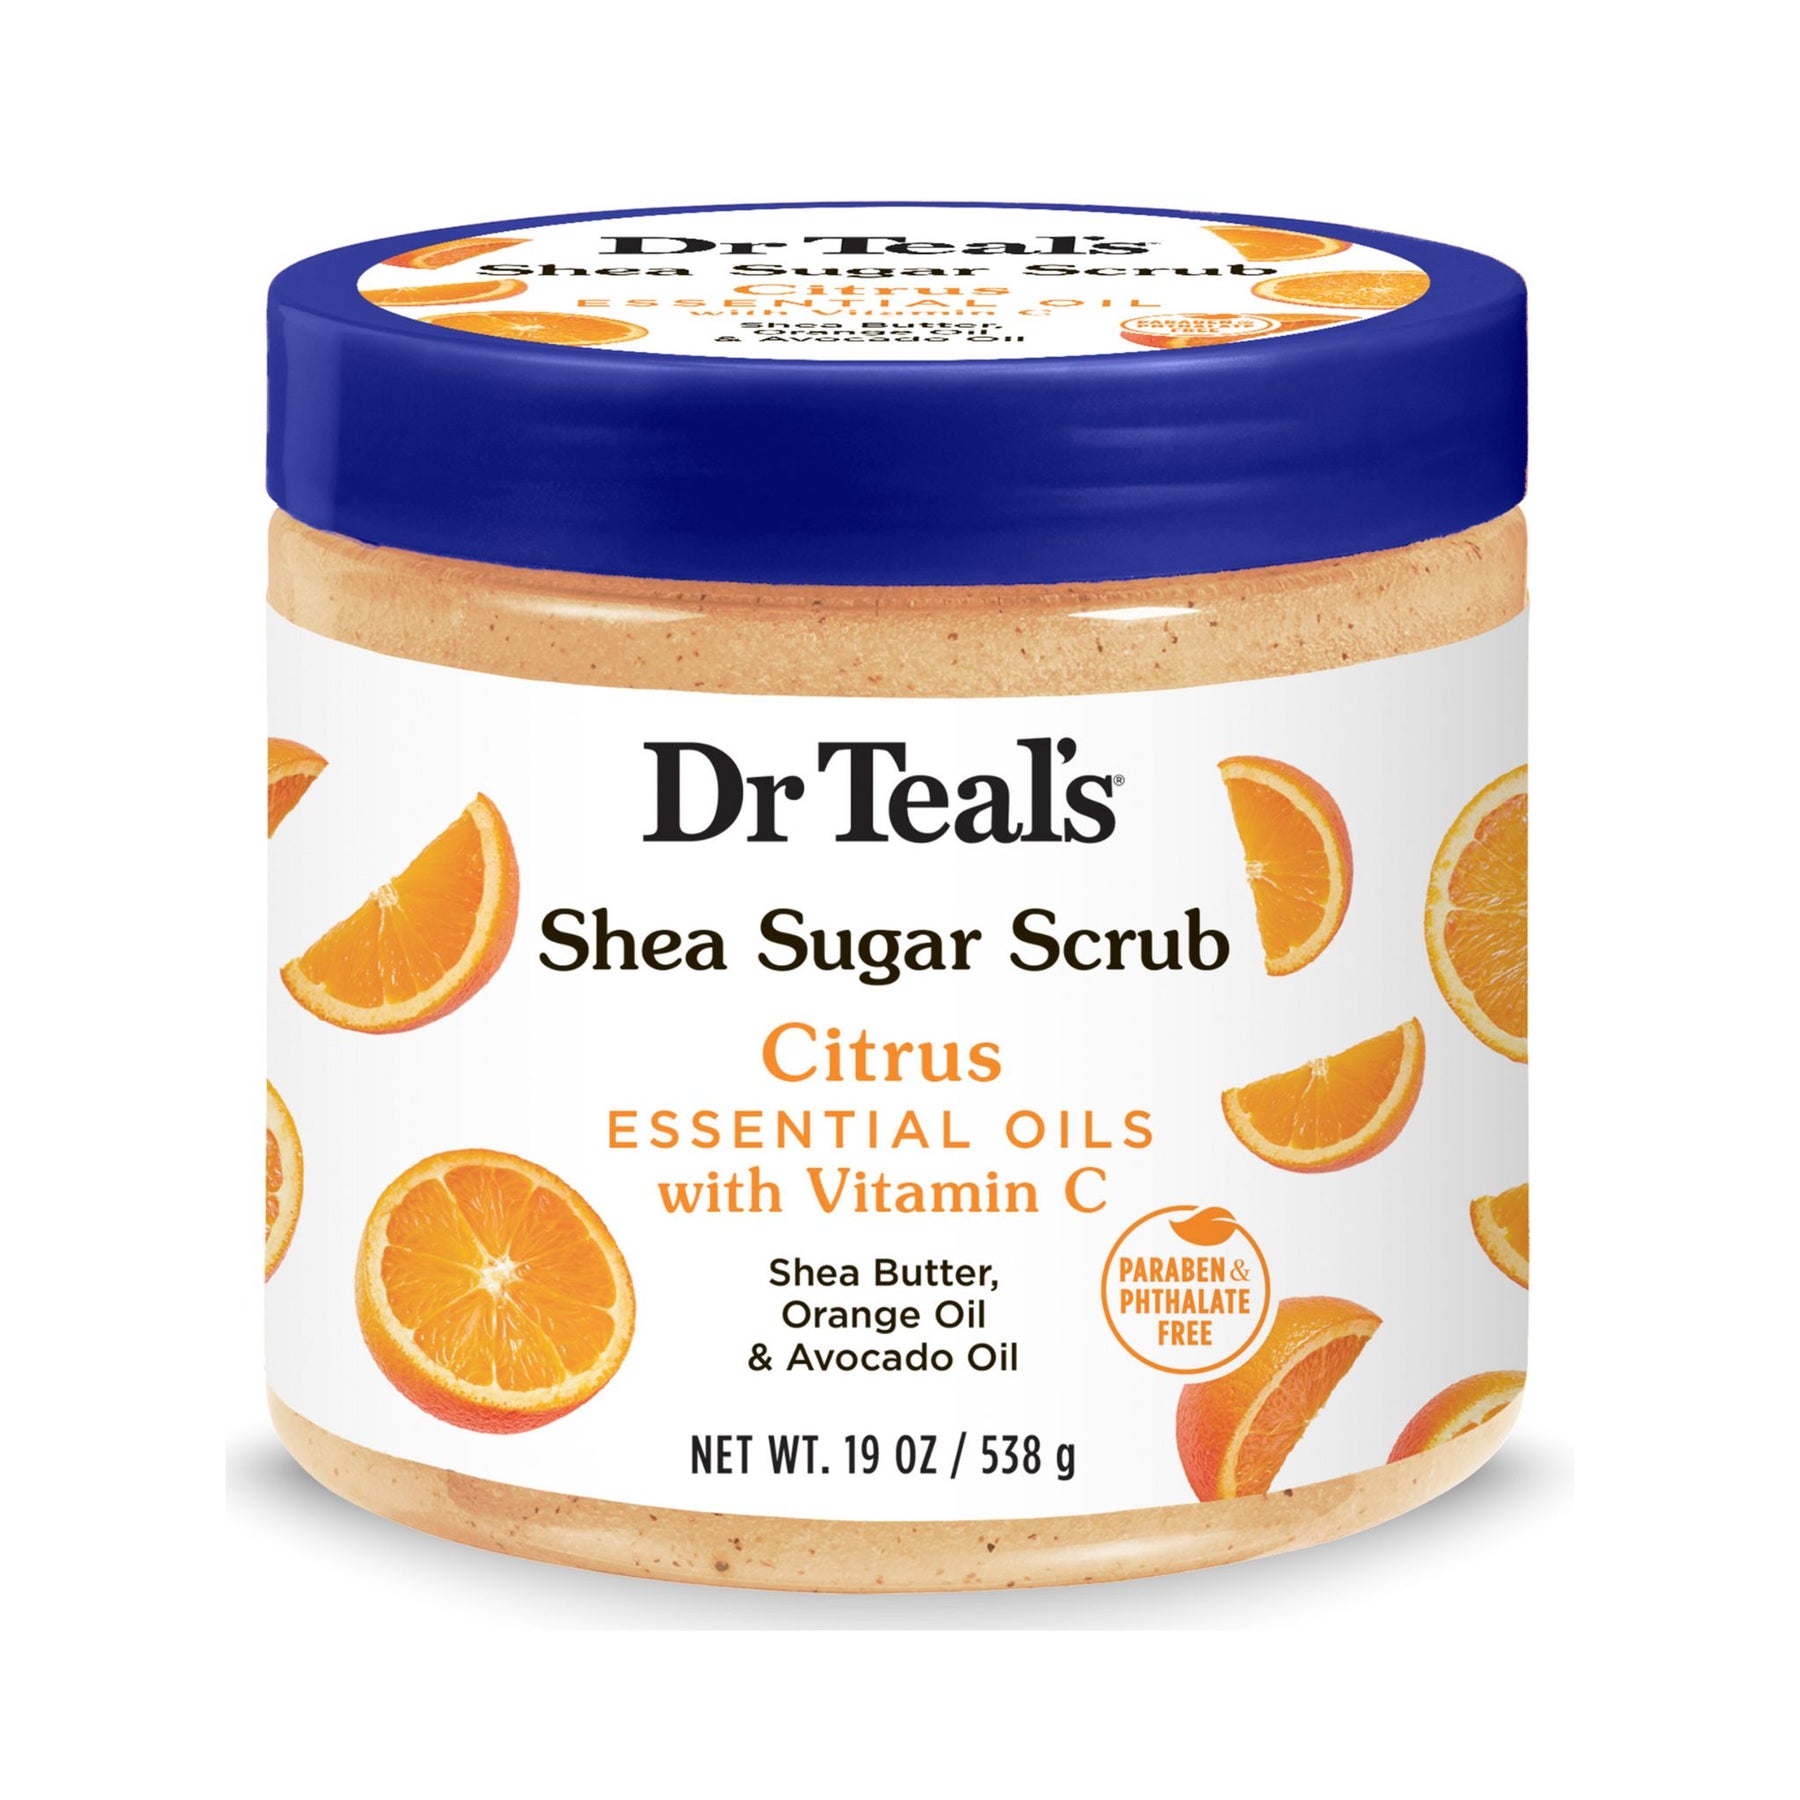 Shea Sugar Body Scrub with Vitamin C